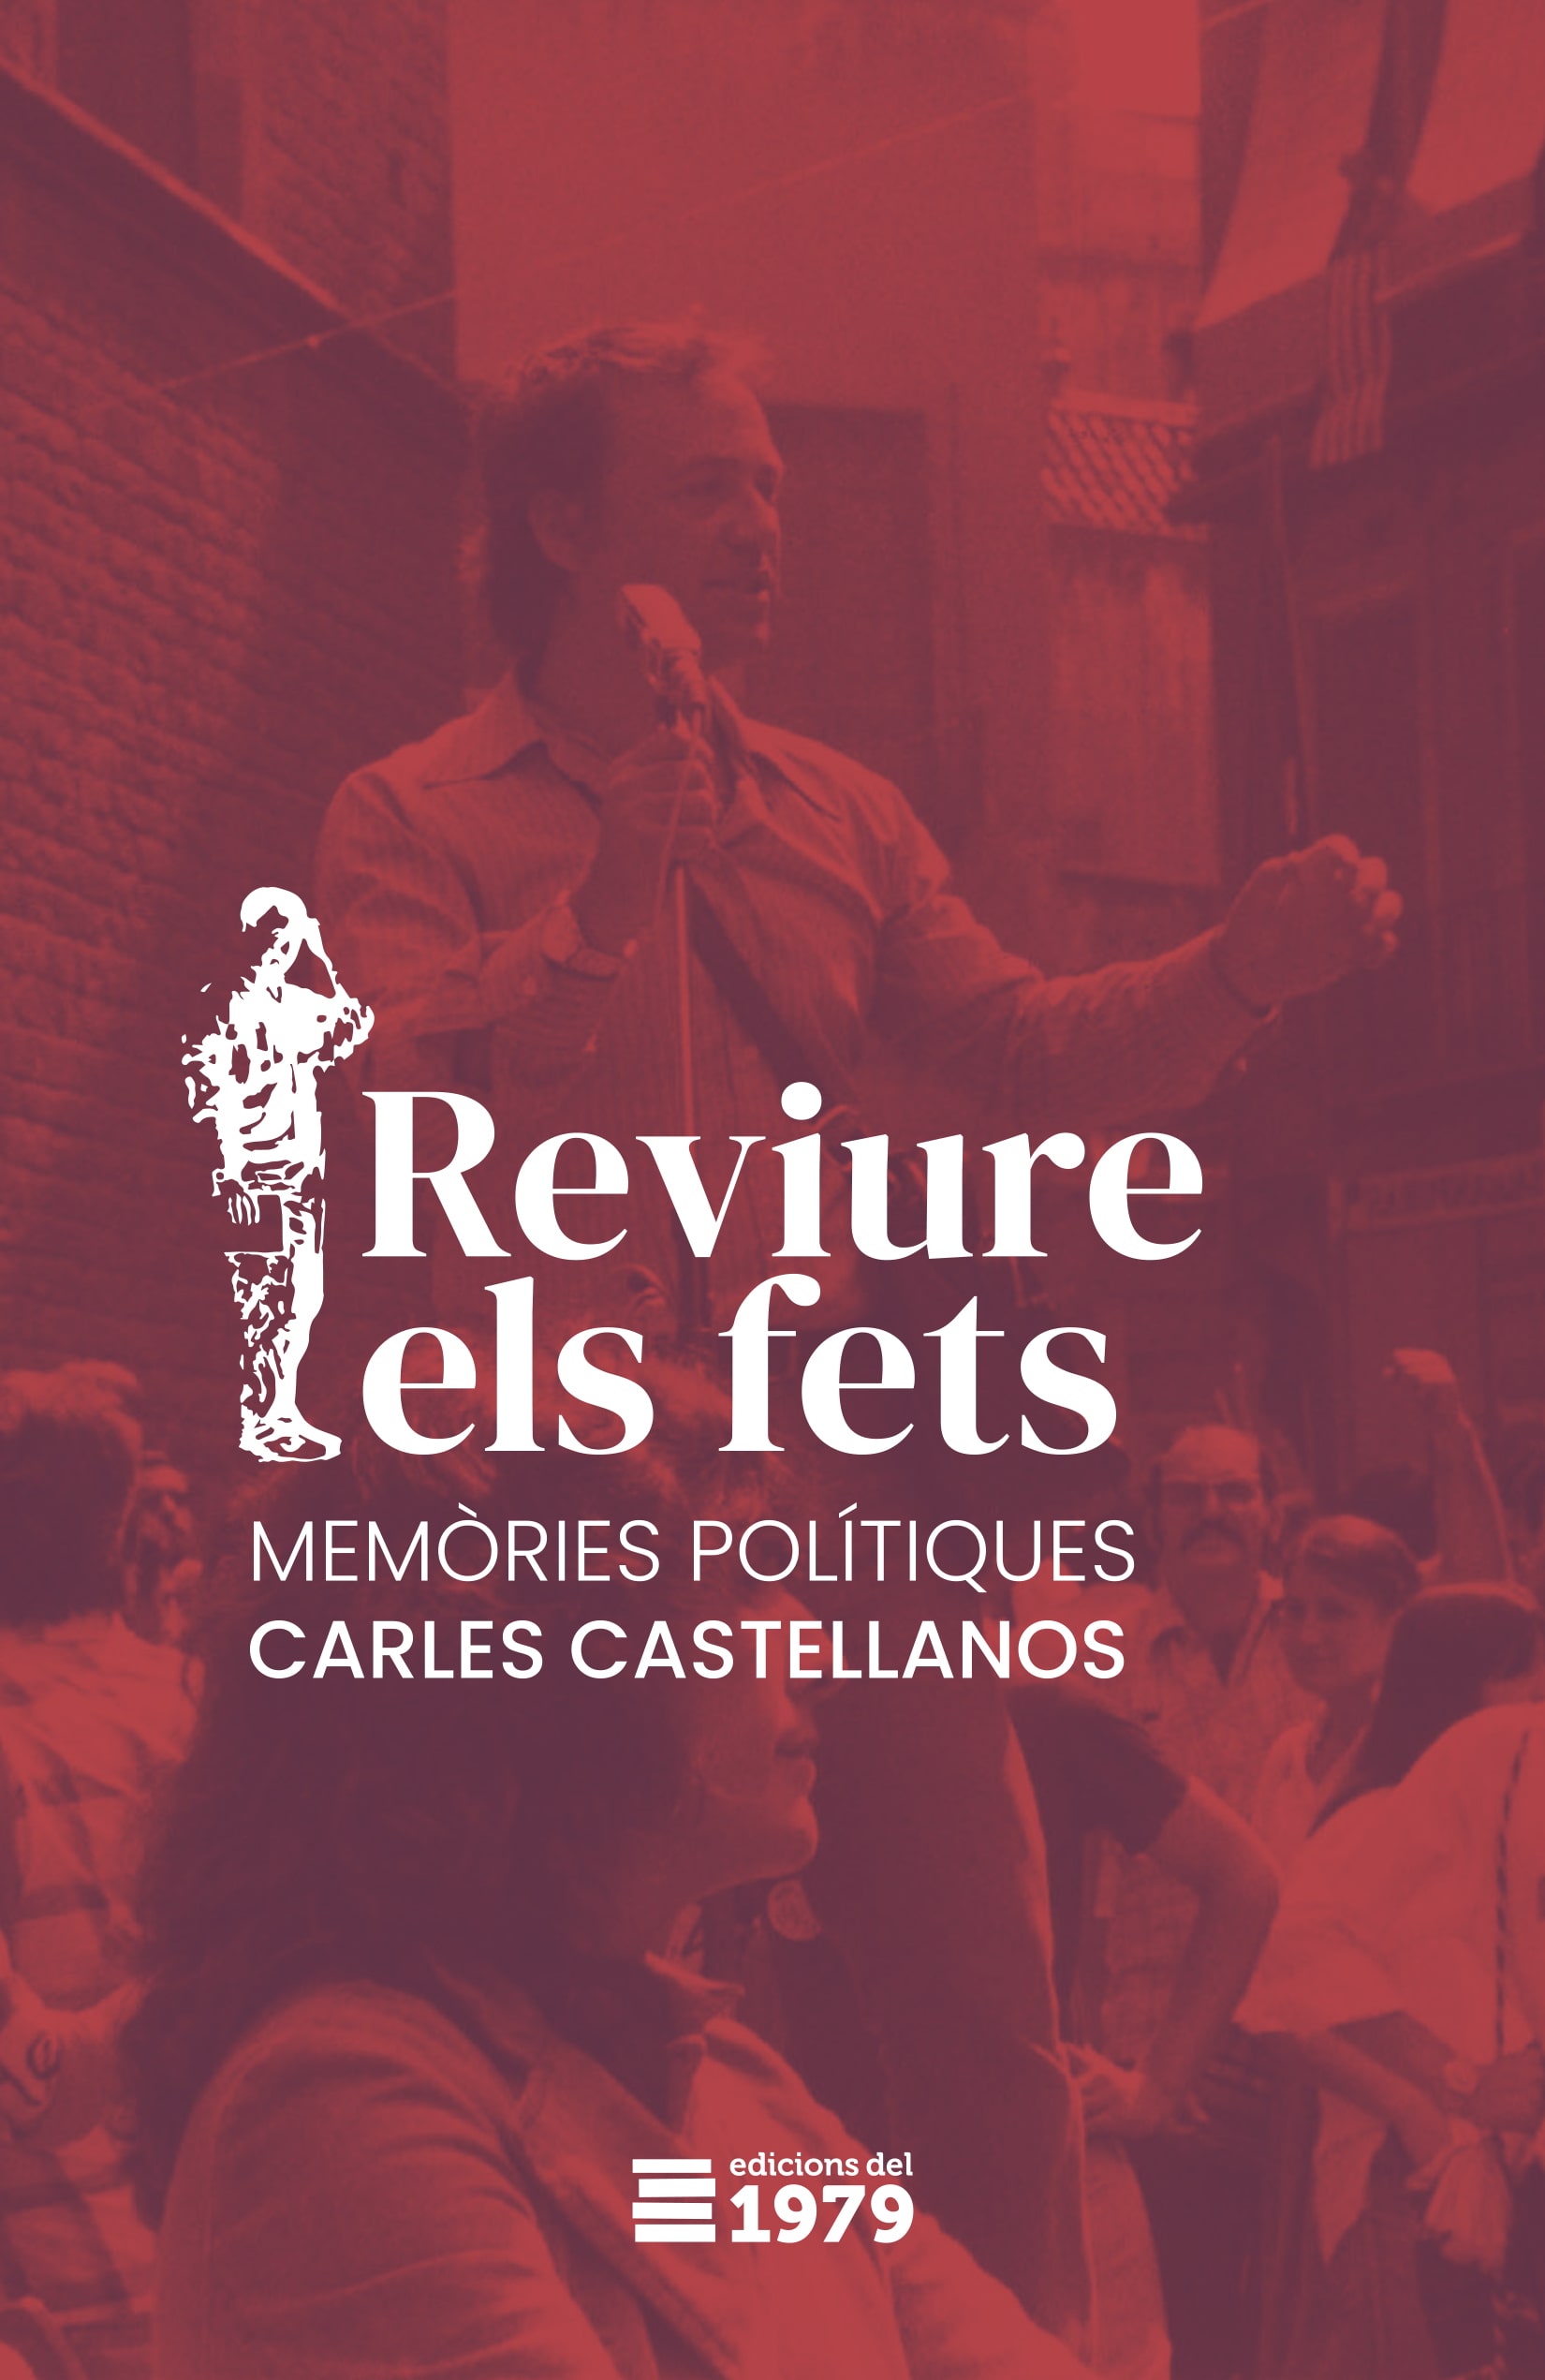 Pròleg i epíleg del llibre “Reviure els fets: Memòries polítiques” d’en Carles Castellanos